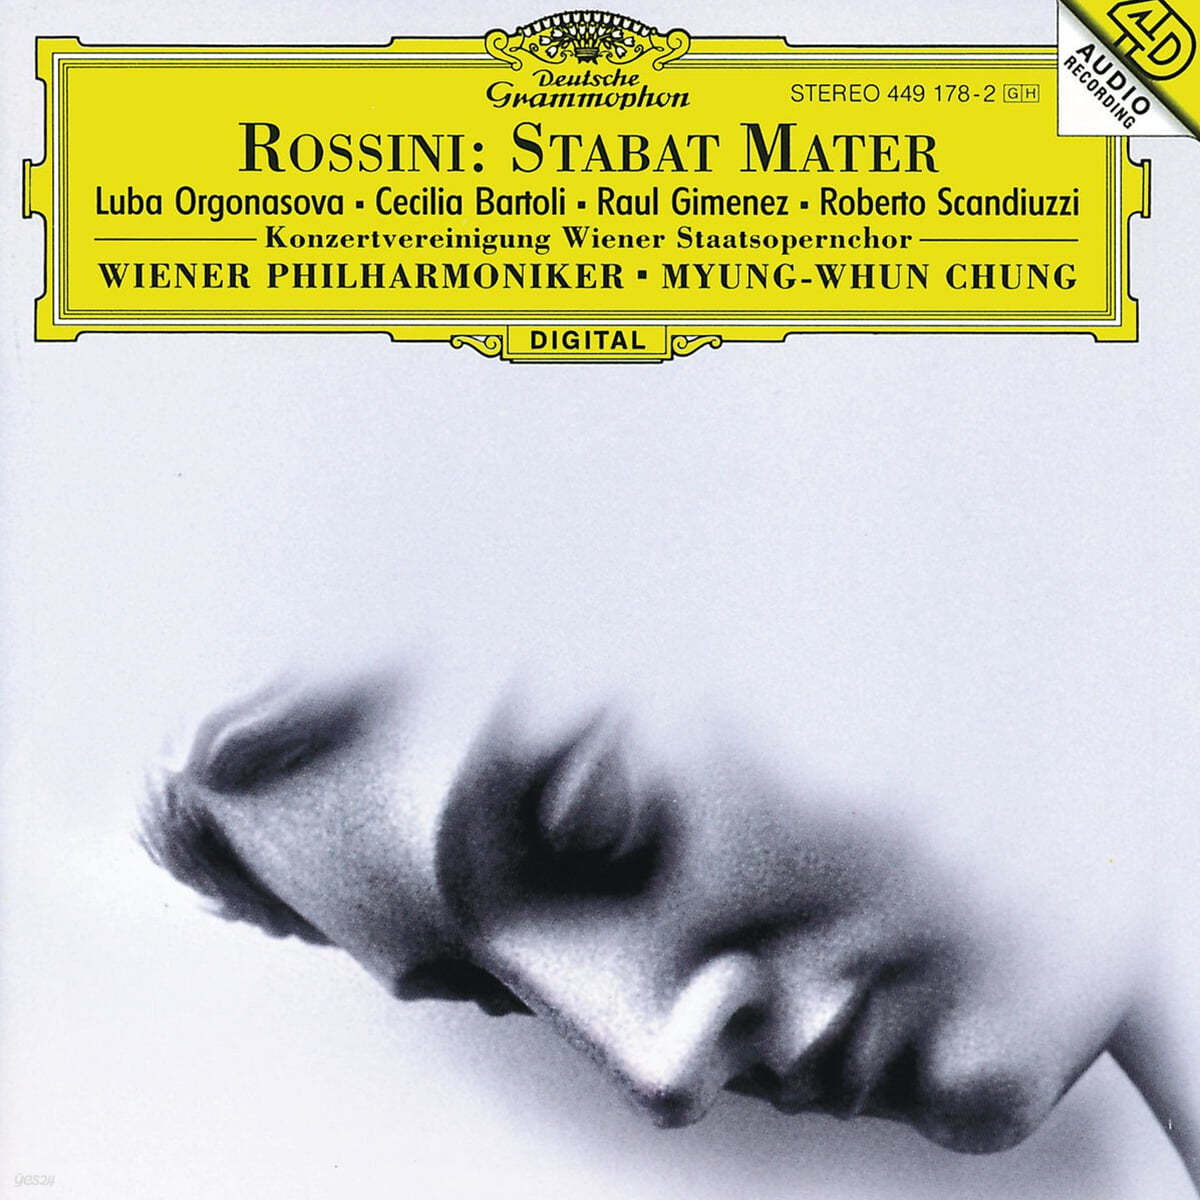 정명훈 / Cecilia Bartoli 로시니: 스타바트 마테르 (Rossini : Stabat Mater)